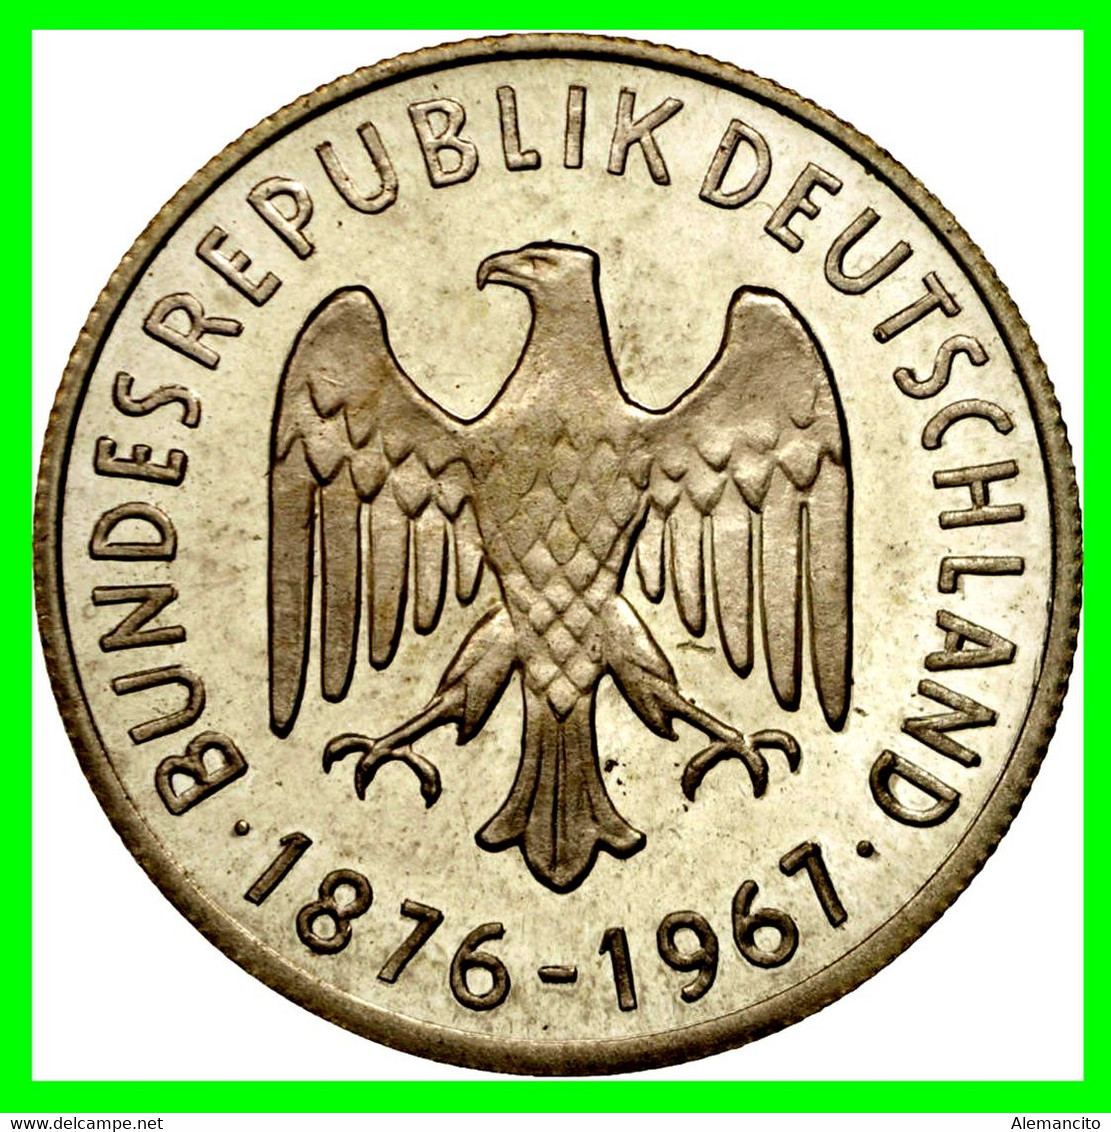 GERMANY ( ALEMANIA ) MONEDA MEDALLA - KONRAD ADENAUER 1876-1967 -- ALEMANIA 15.00 GR DE PLATA Y DE 35 MM DE DIAMETRO - Collections